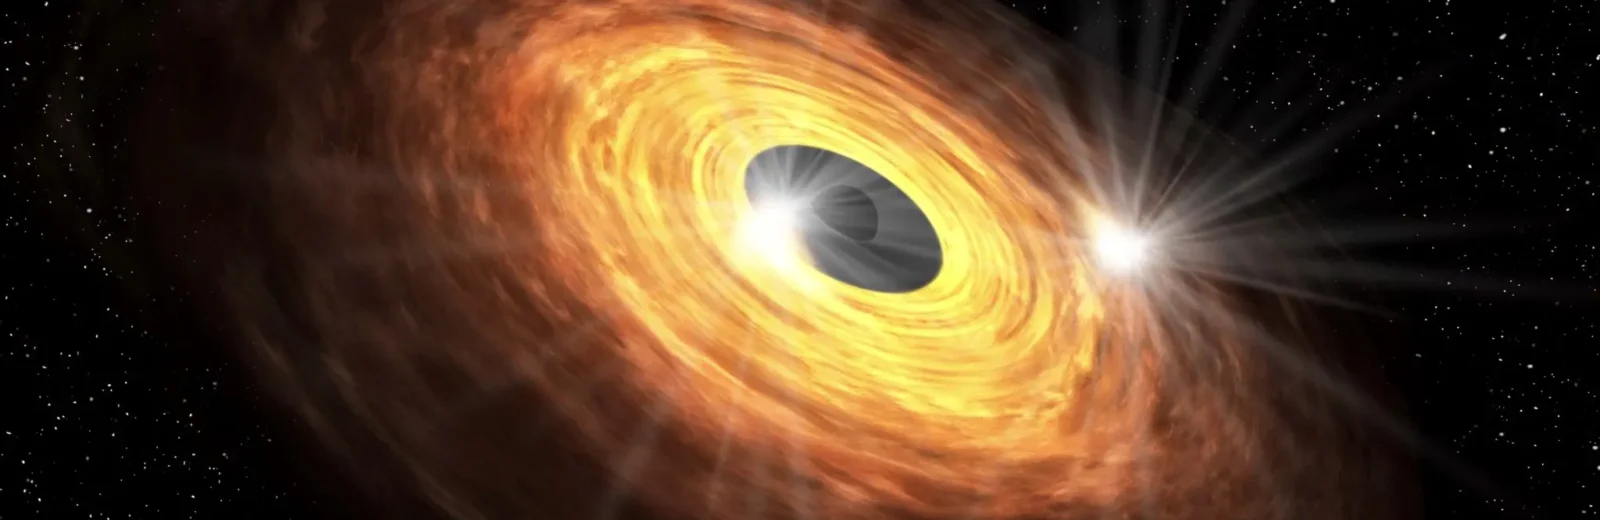 きらきらひかる、大きなブラックホール 